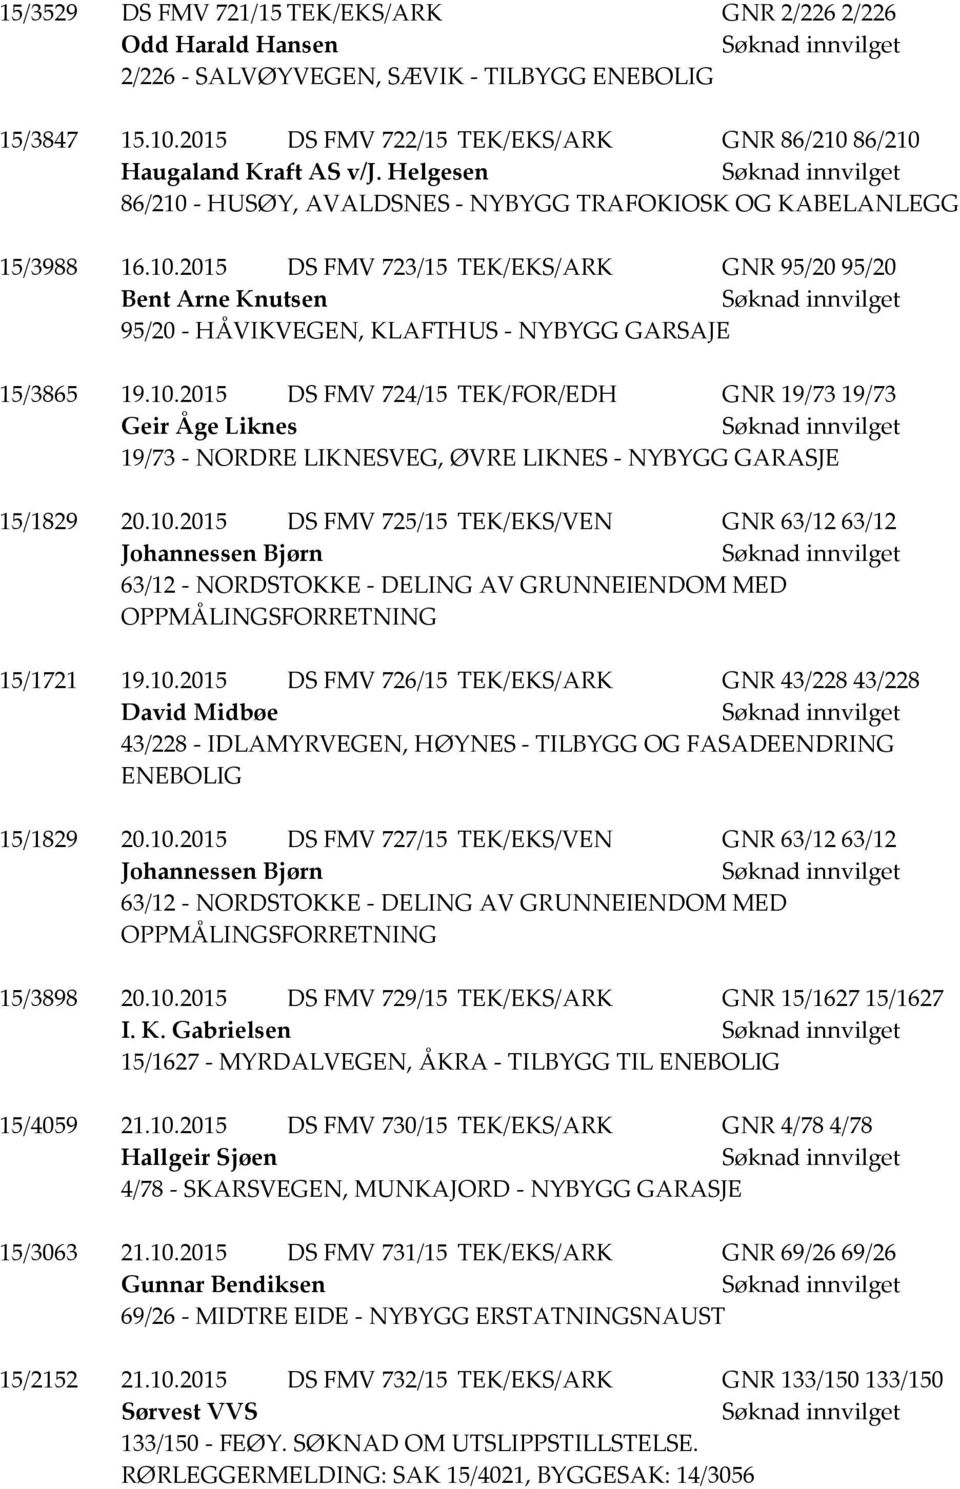 10.2015 DS FMV 724/15 TEK/FOR/EDH GNR 19/73 19/73 Geir Åge Liknes 19/73 - NORDRE LIKNESVEG, ØVRE LIKNES - NYBYGG GARASJE 15/1829 20.10.2015 DS FMV 725/15 TEK/EKS/VEN GNR 63/12 63/12 Johannessen Bjørn 63/12 - NORDSTOKKE - DELING AV GRUNNEIENDOM MED OPPMÅLINGSFORRETNING 15/1721 19.